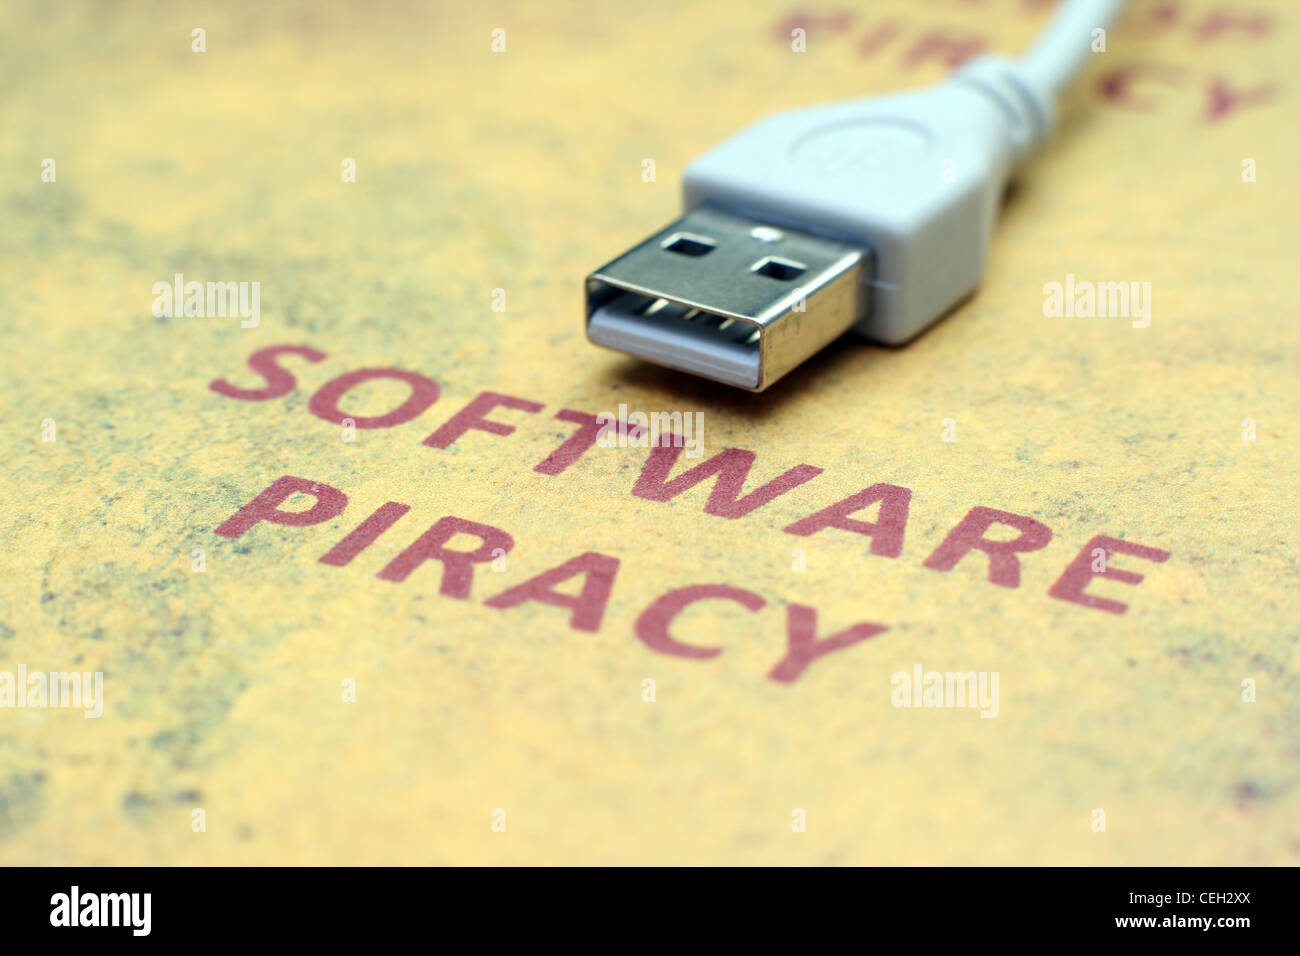 Web piracy Stock Photo